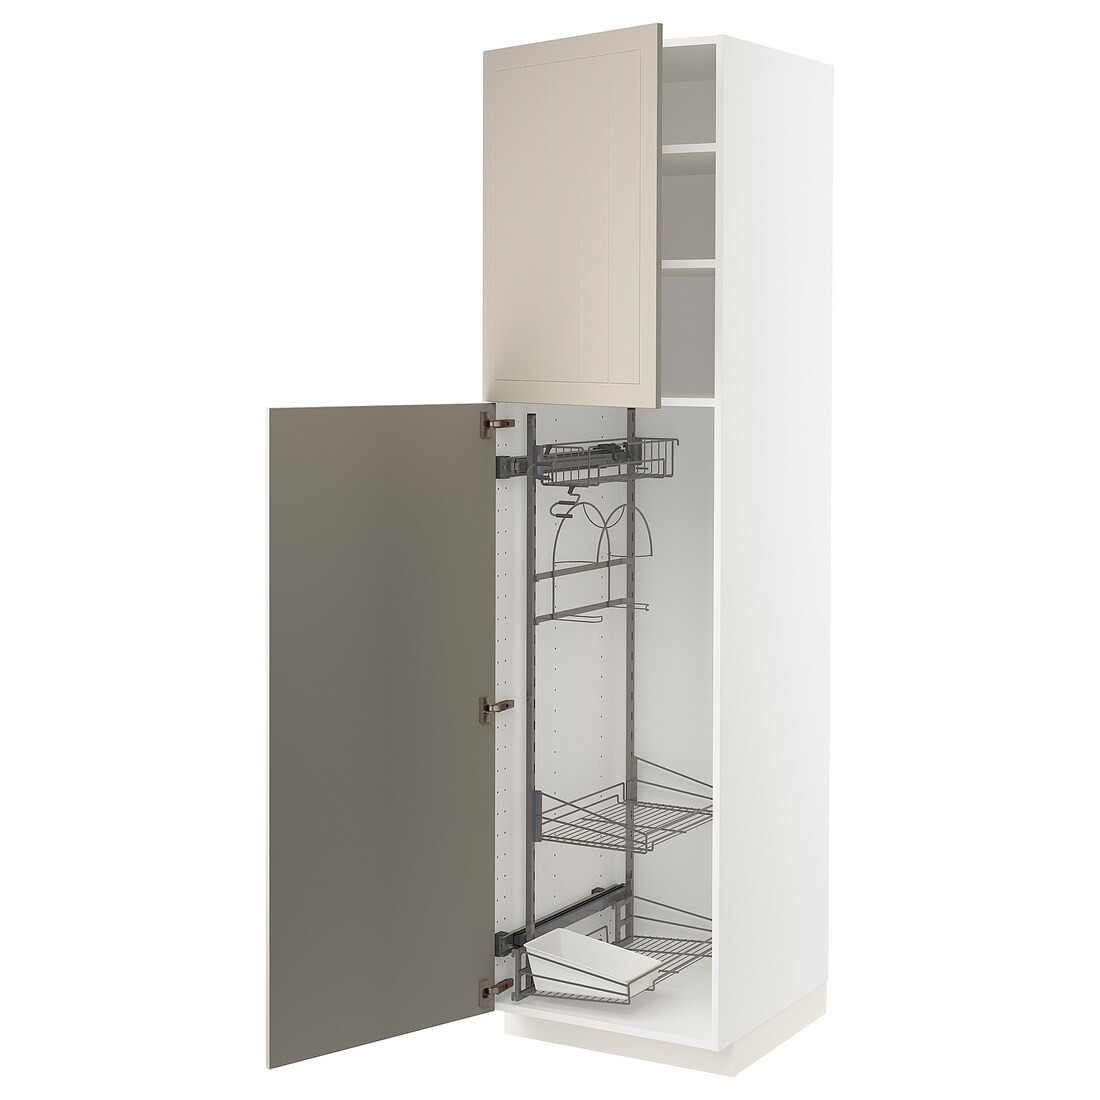 METOD МЕТОД Высокий шкаф с отделением для аксессуаров для уборки, белый / Stensund бежевый, 60x60x220 см